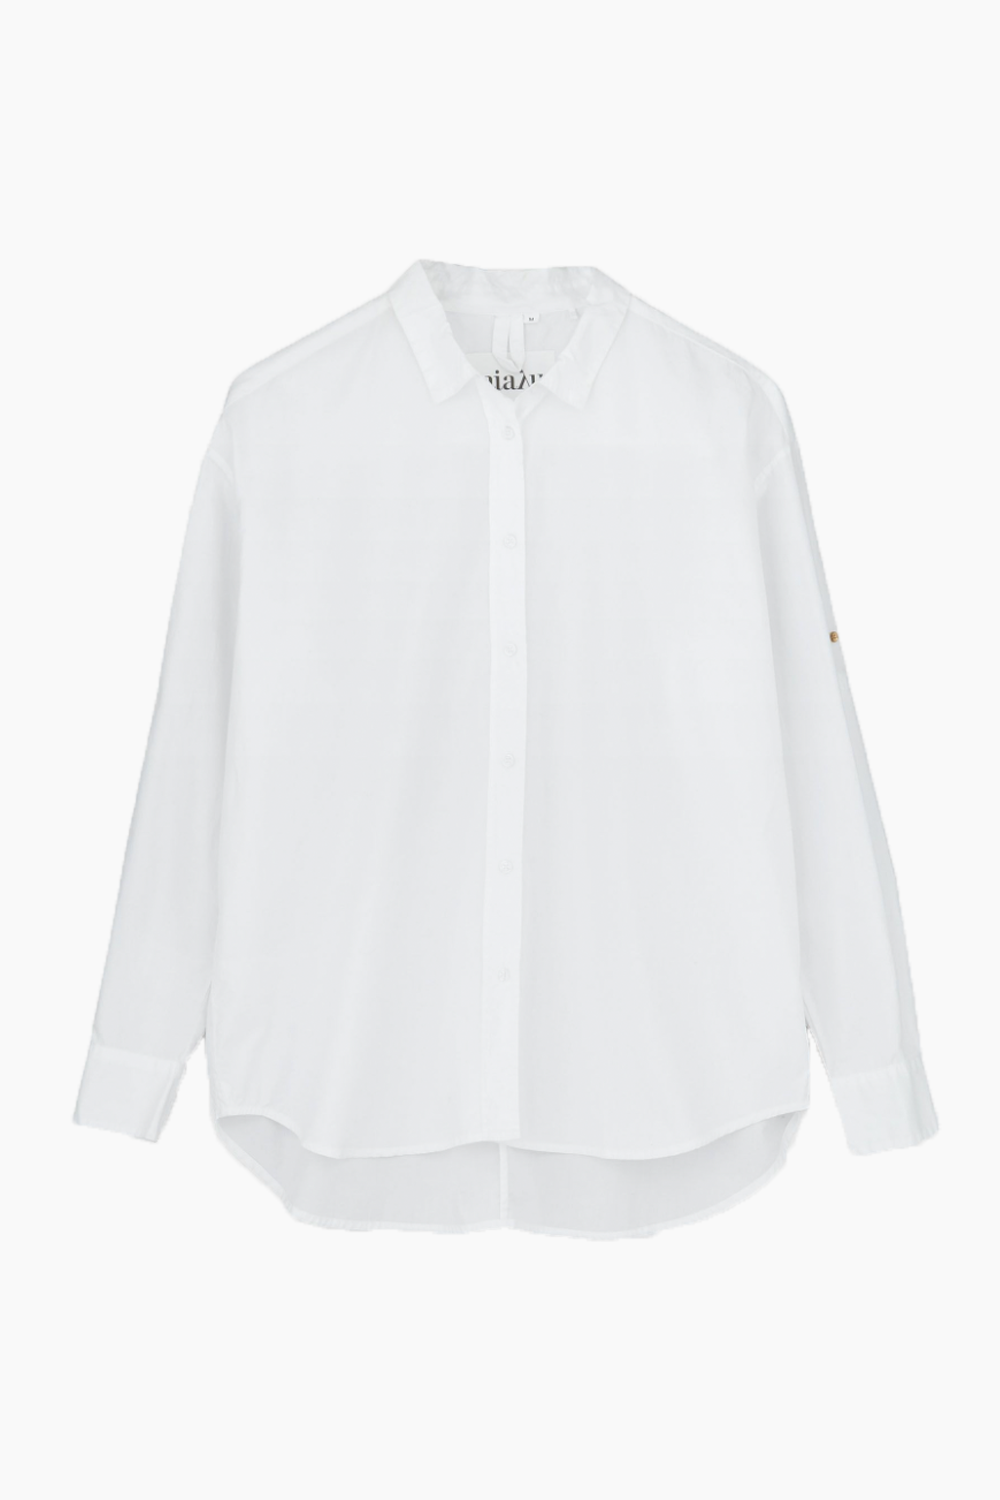 Se Shirt - White - Aiayu - Hvid S hos QNTS.dk